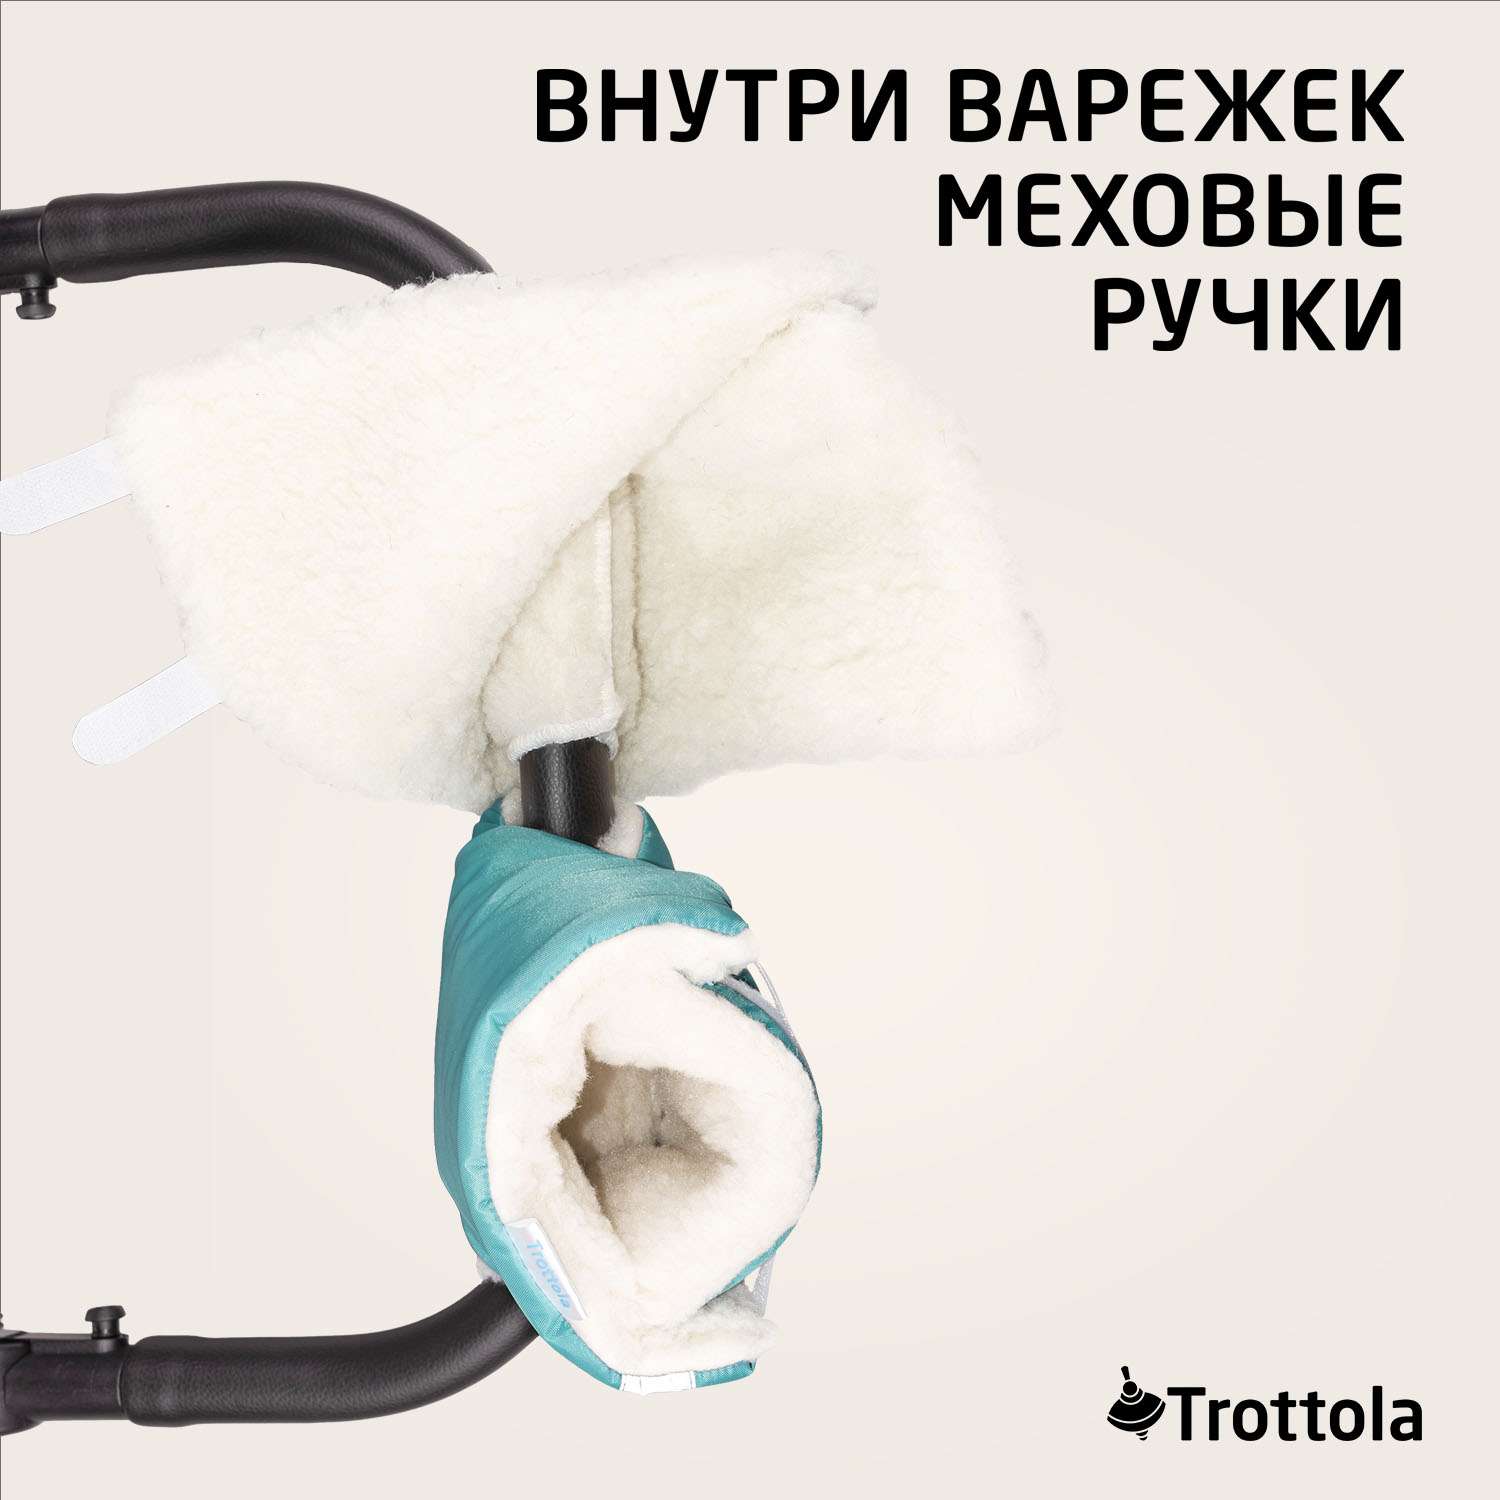 Муфты- варежки для рук Trottola бирюзовые на коляску Т055/бирюзовый - фото 3